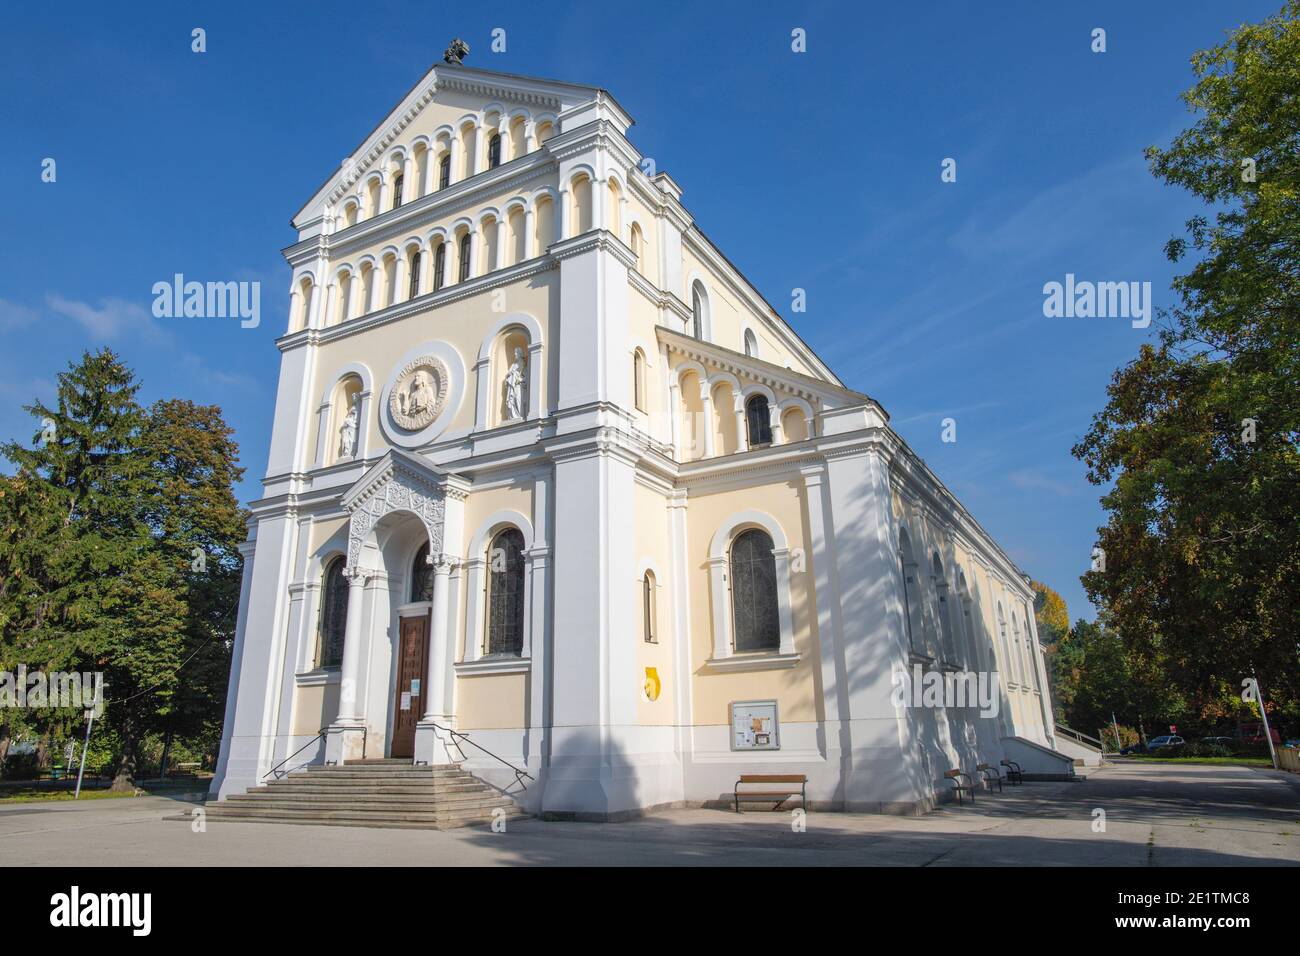 WIEN, AUSTIRA - 22. OKTOBER 2020: Die Pfarrkirche Kaisermühlen Ende 19. Jh. Stockfoto